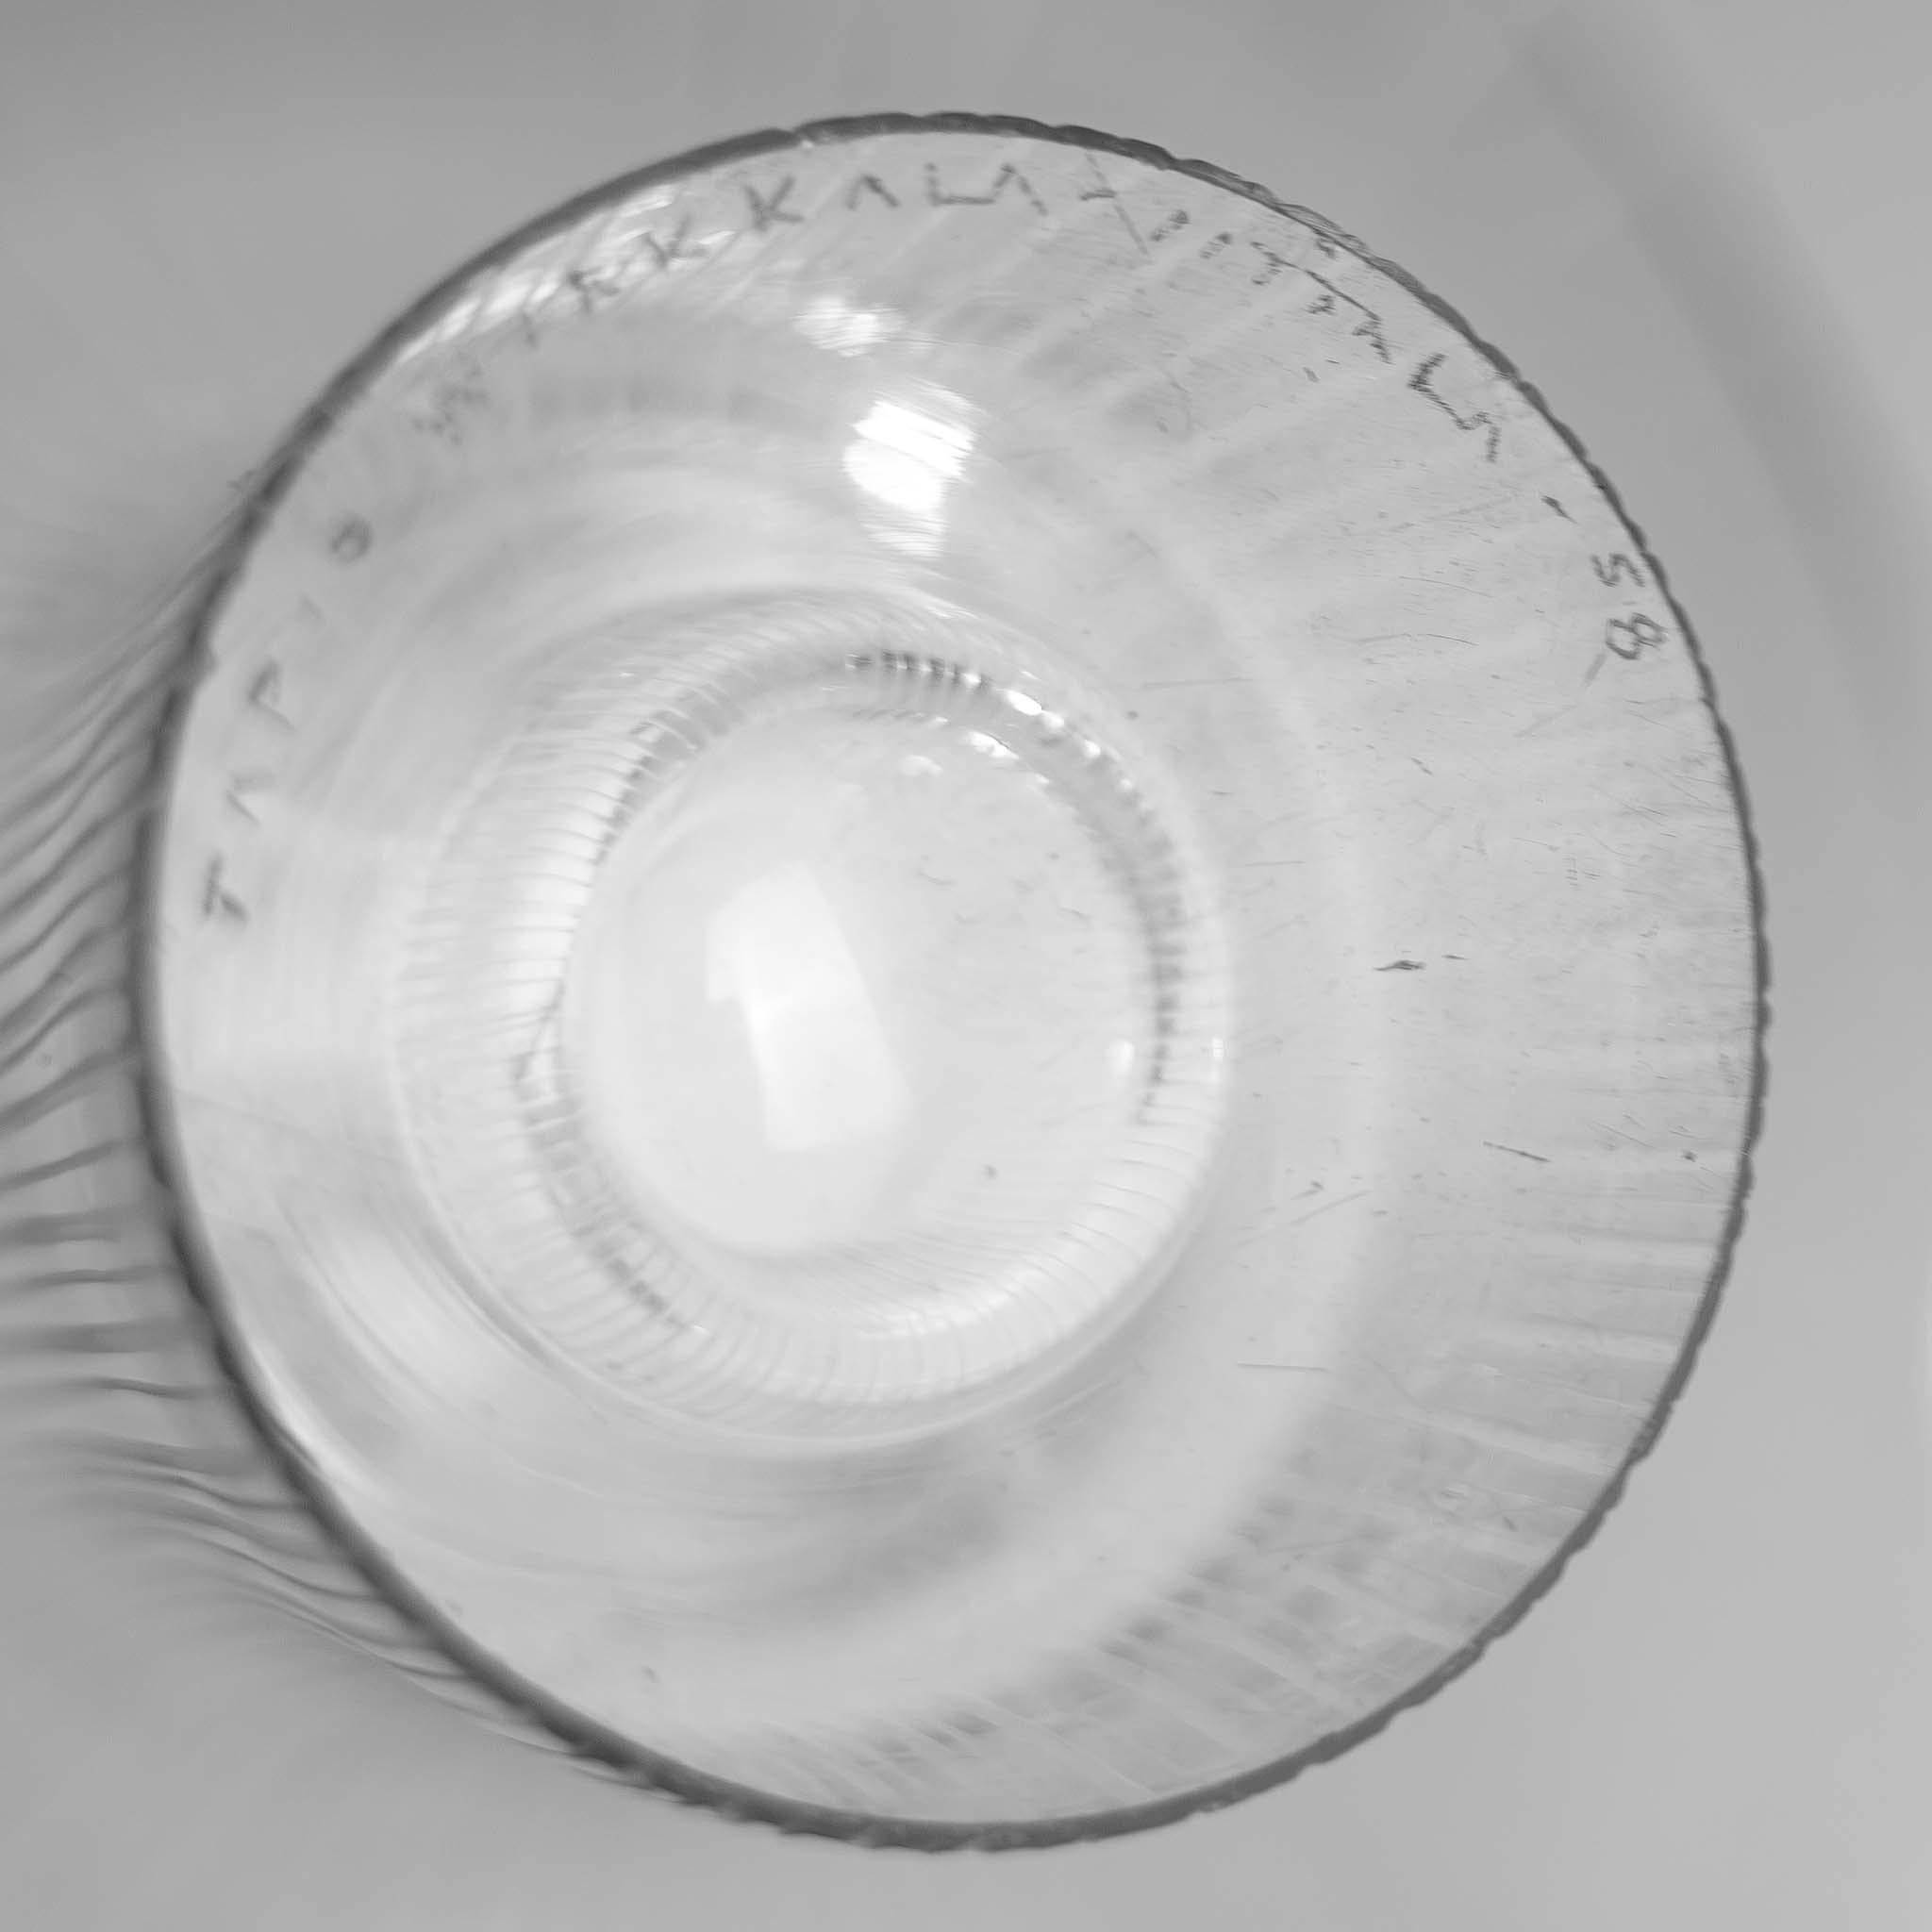 Moderno escandinavo Tapio Wirkkala Dos jarrones Art Line de cristal tallado Soplado a mano  2